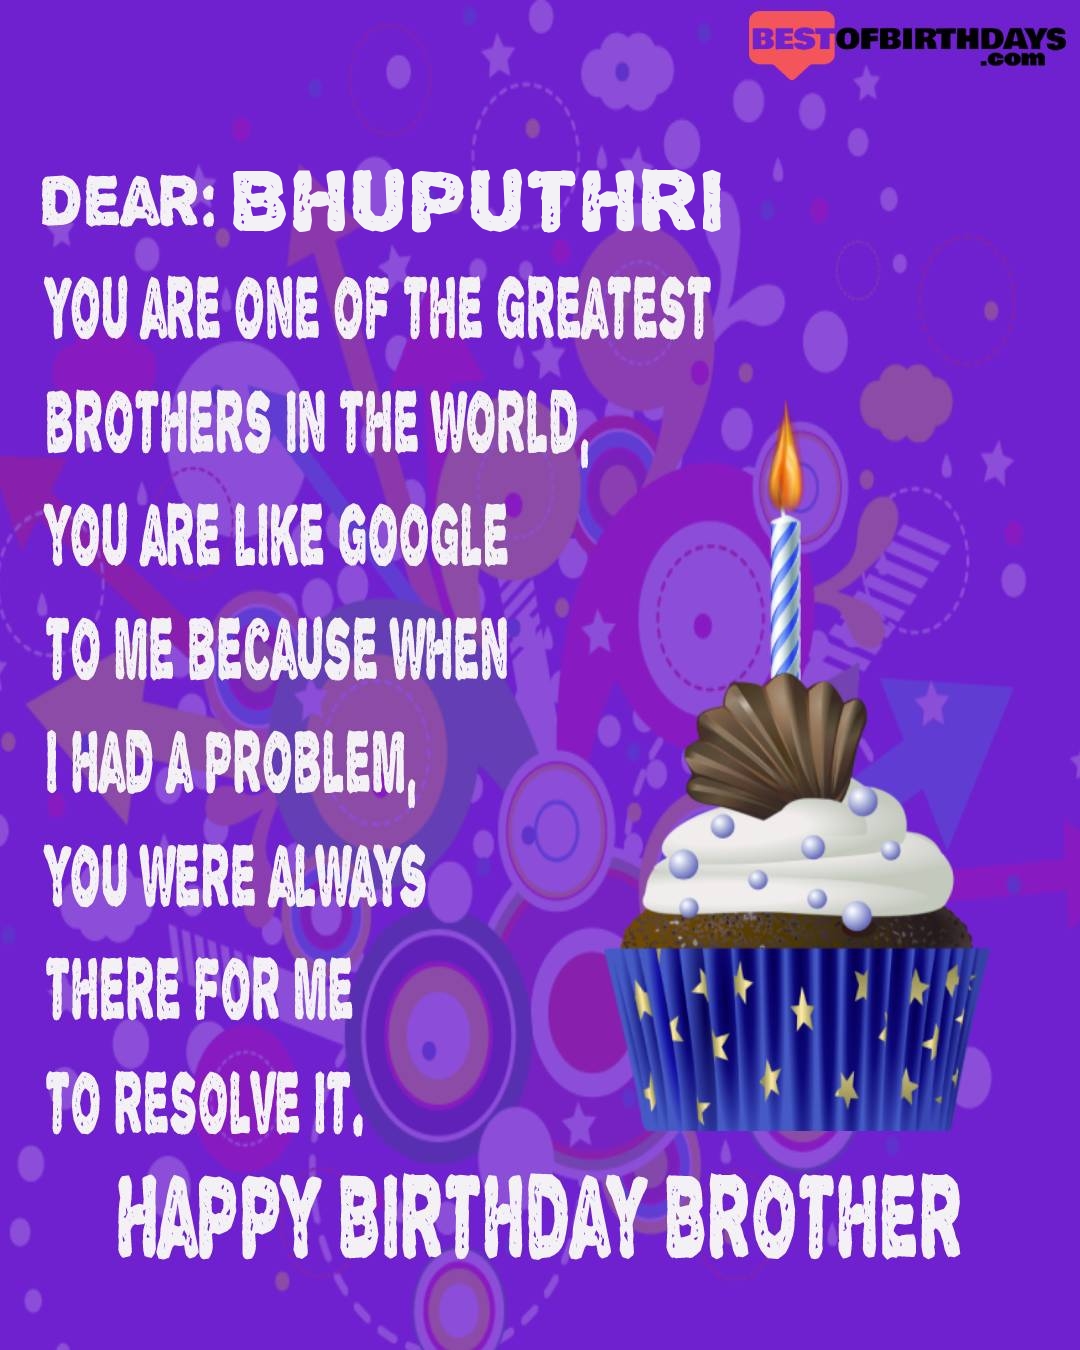 Happy birthday bhuputhri bhai brother bro